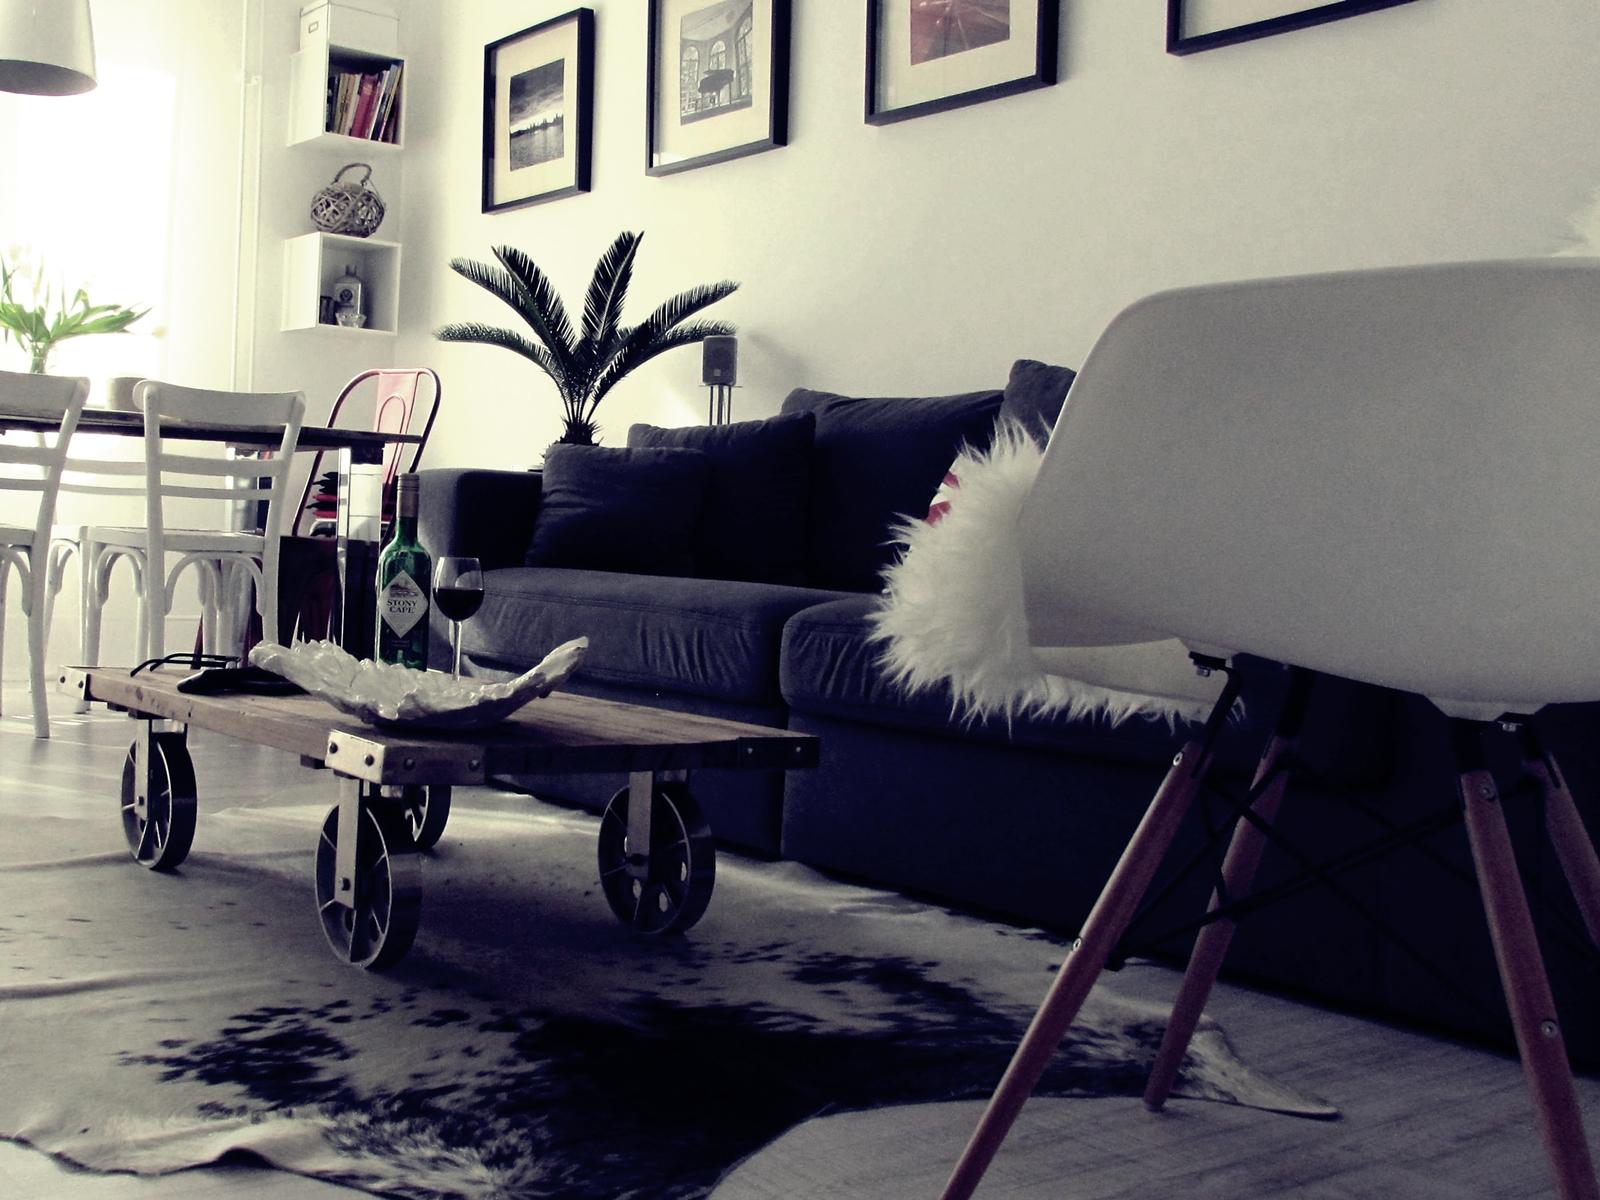 Livingroom im Industrie Look #couchtisch #wohnzimmer #industriedesign #weißerstuhl #metallstuhl #kuhfellteppich #xxlsofa #industriedesigncouchtisch ©roomrevolution